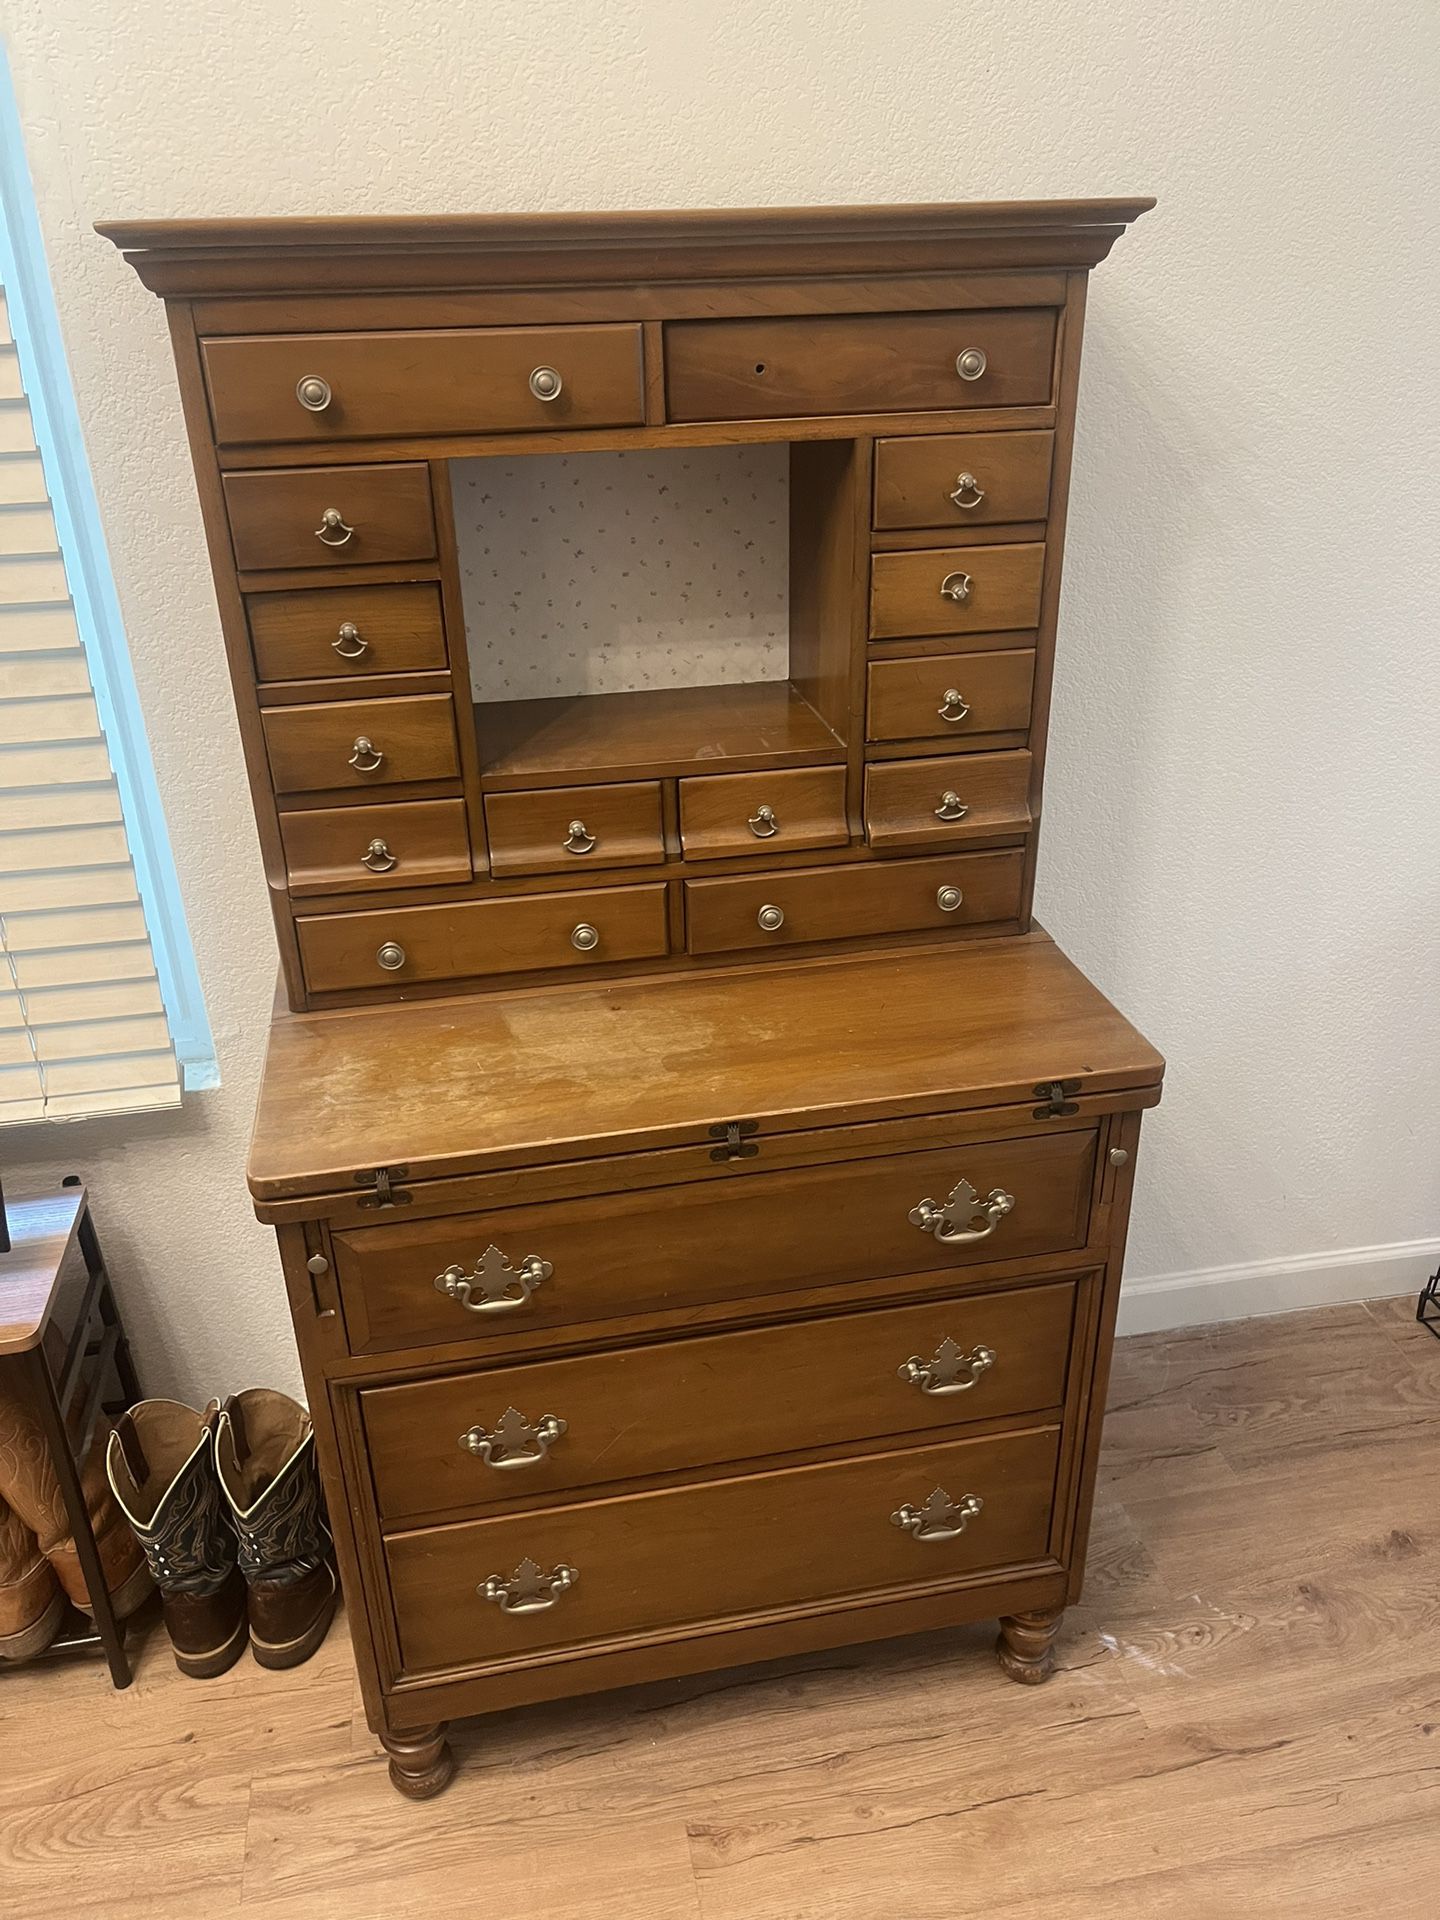 Antique Desk/dresser